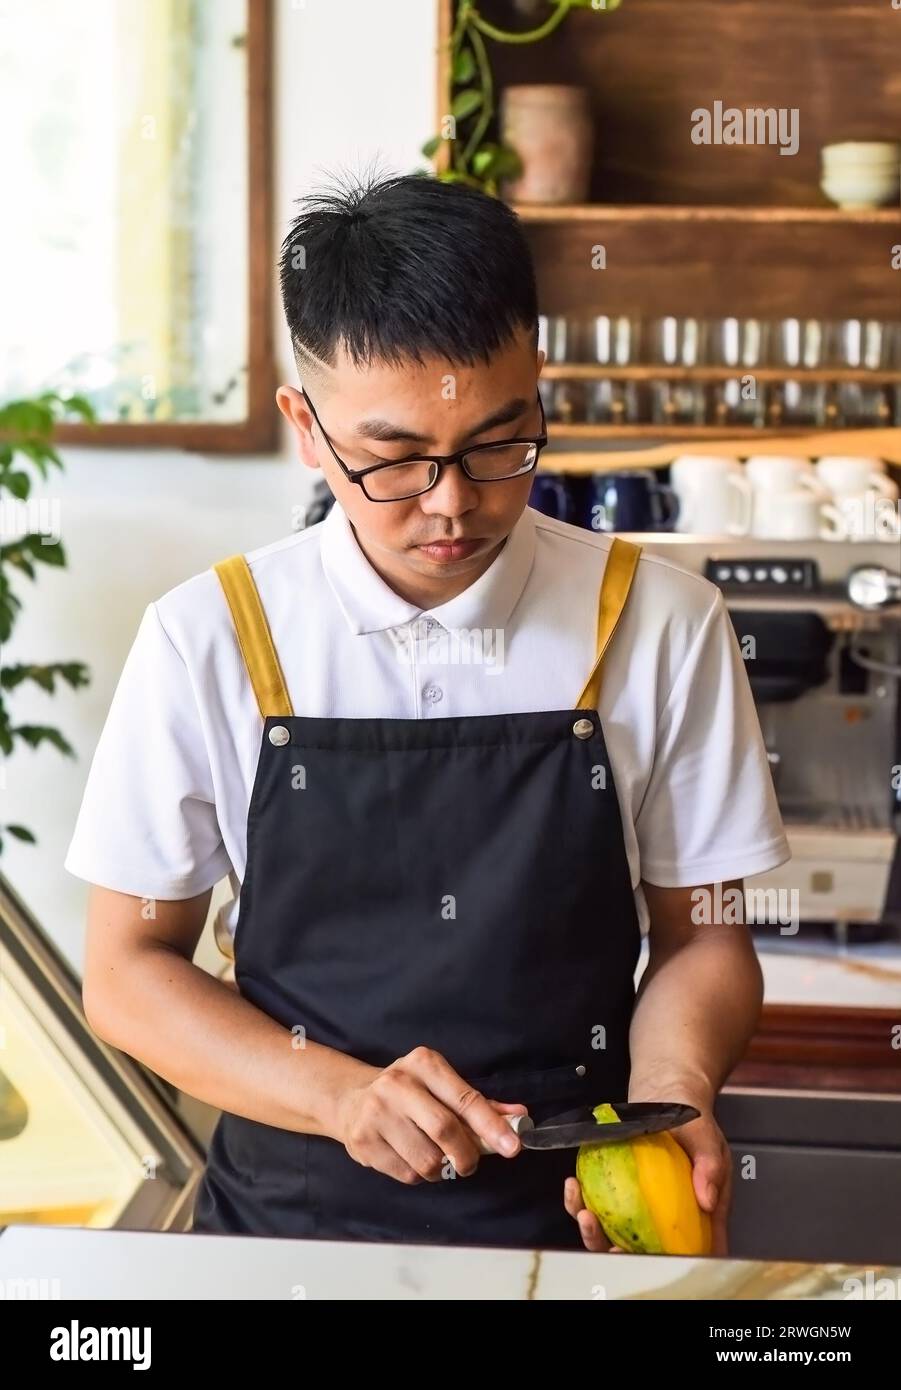 Vietnamesischer Chefkoch, der frische Mango im Café schält Stockfoto